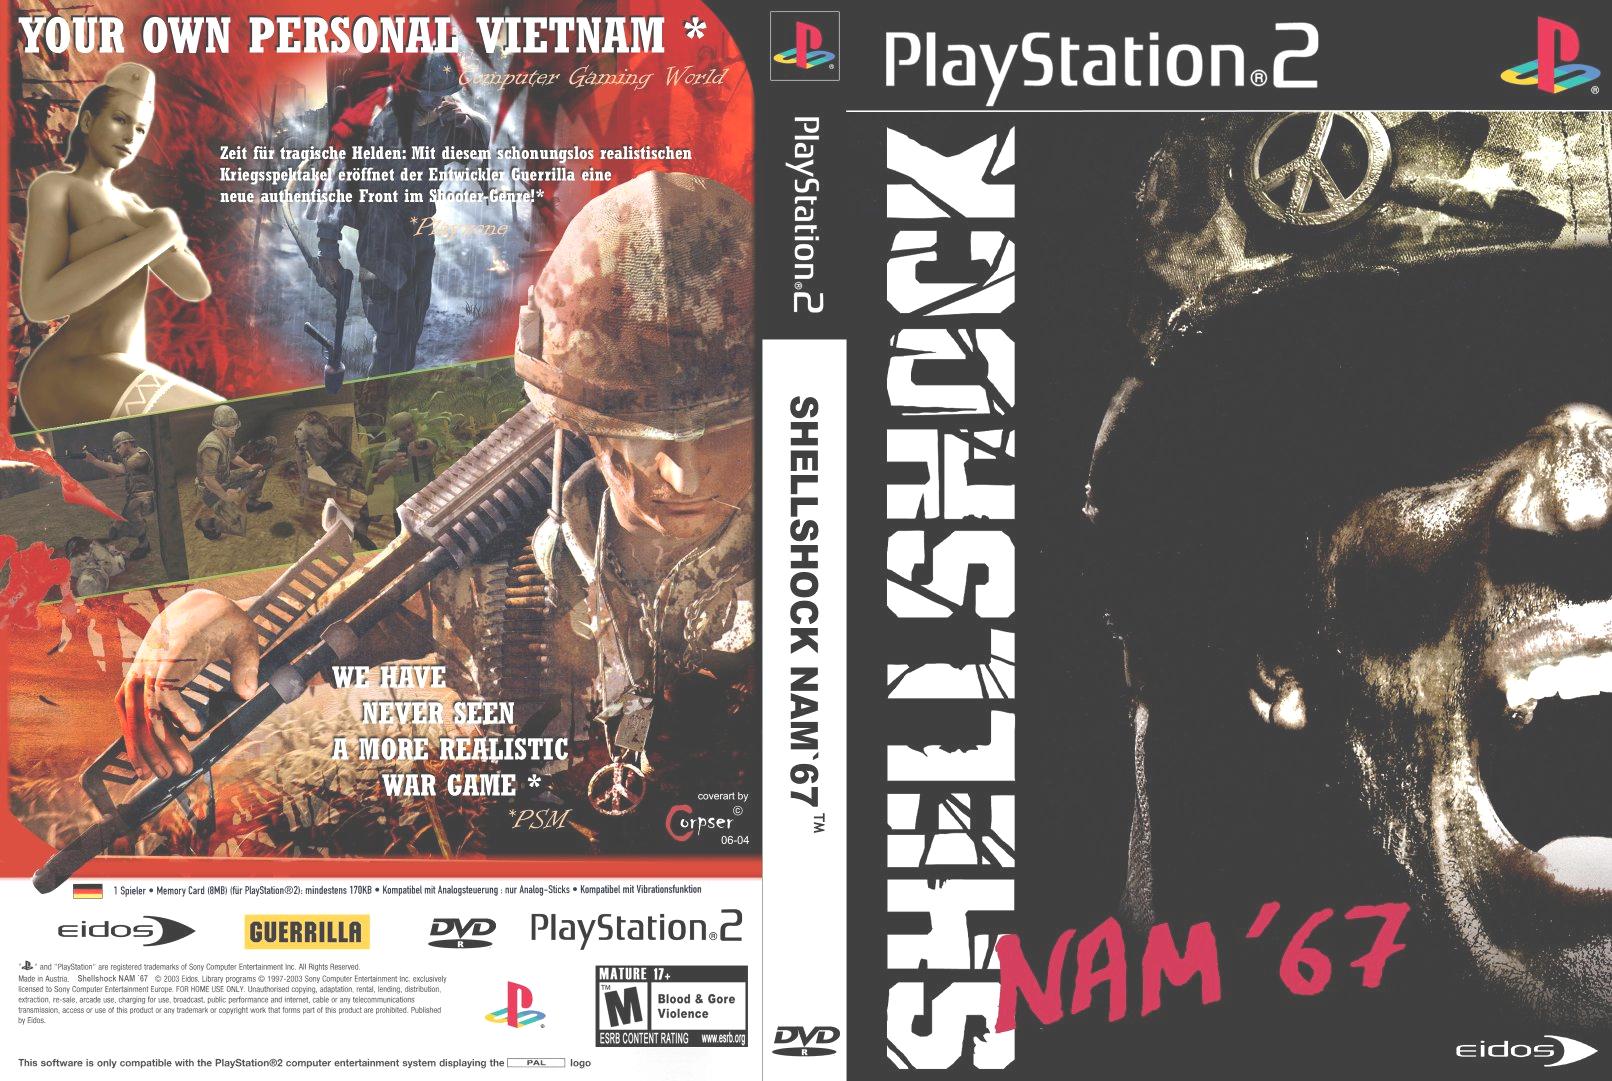 ShellShock Nam 67 PS 2